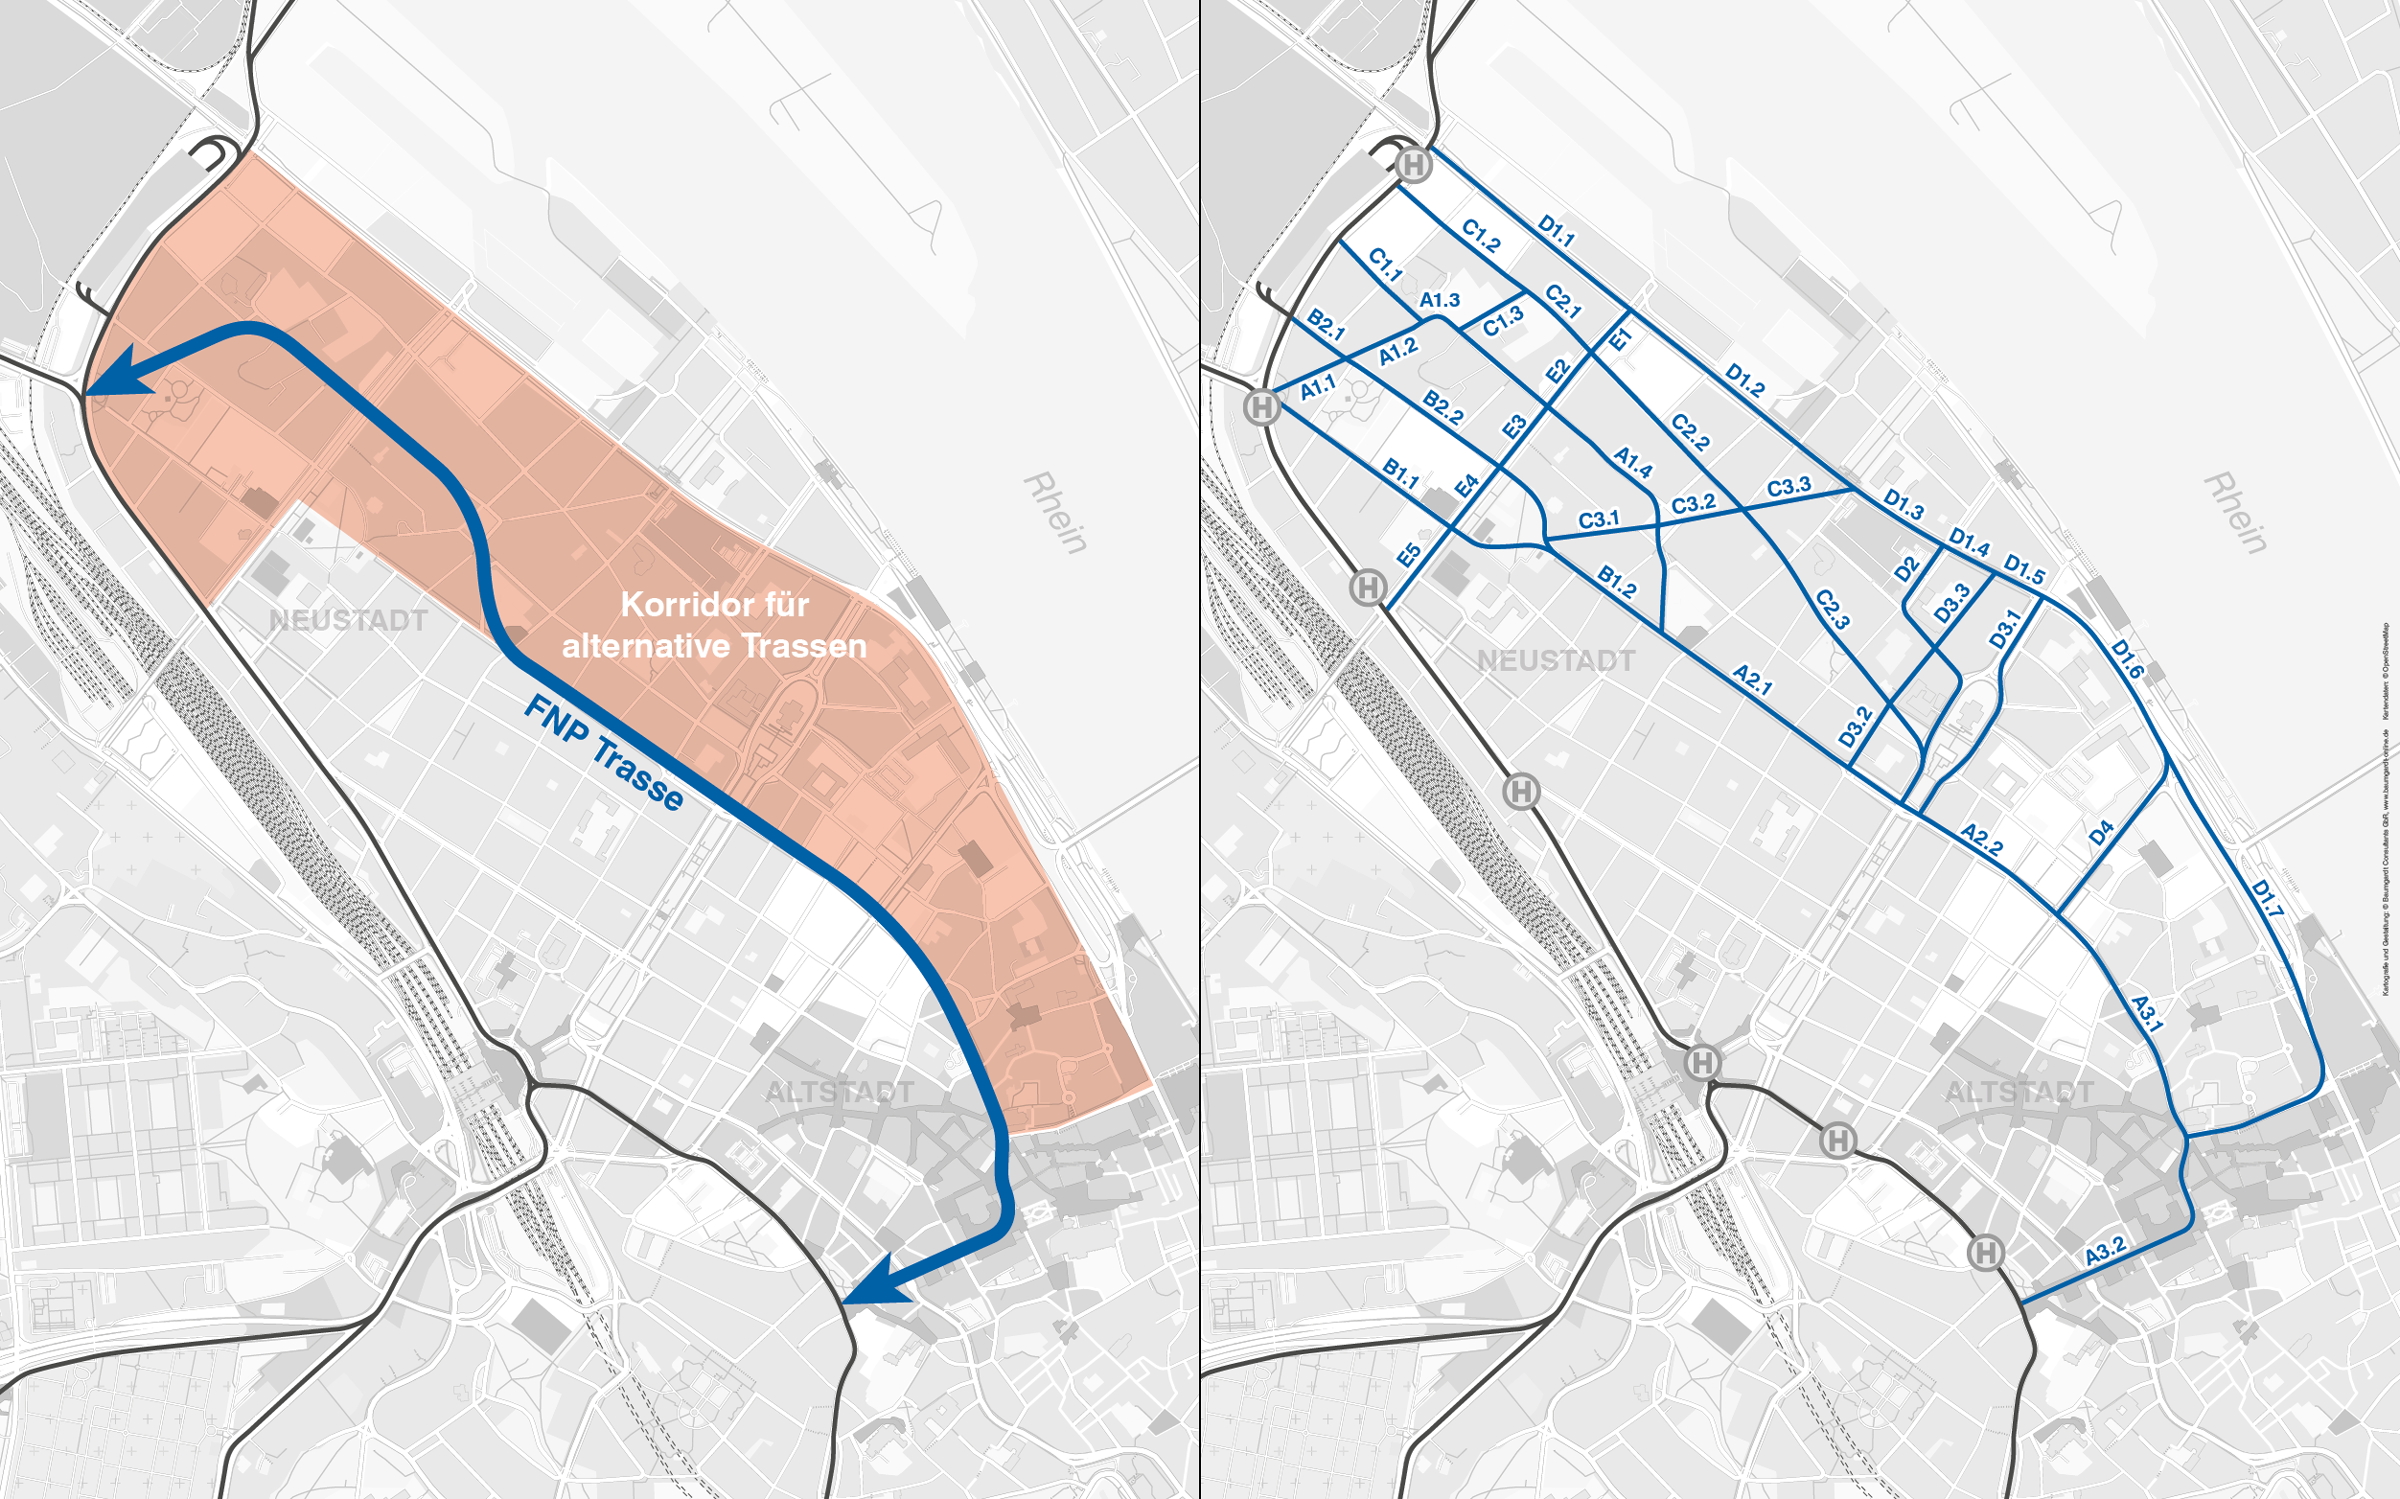 Untersuchungskorridor aus dem Flächennutzungsplan (links) und technisch umsetzbare Streckenabschnitte (rechts)